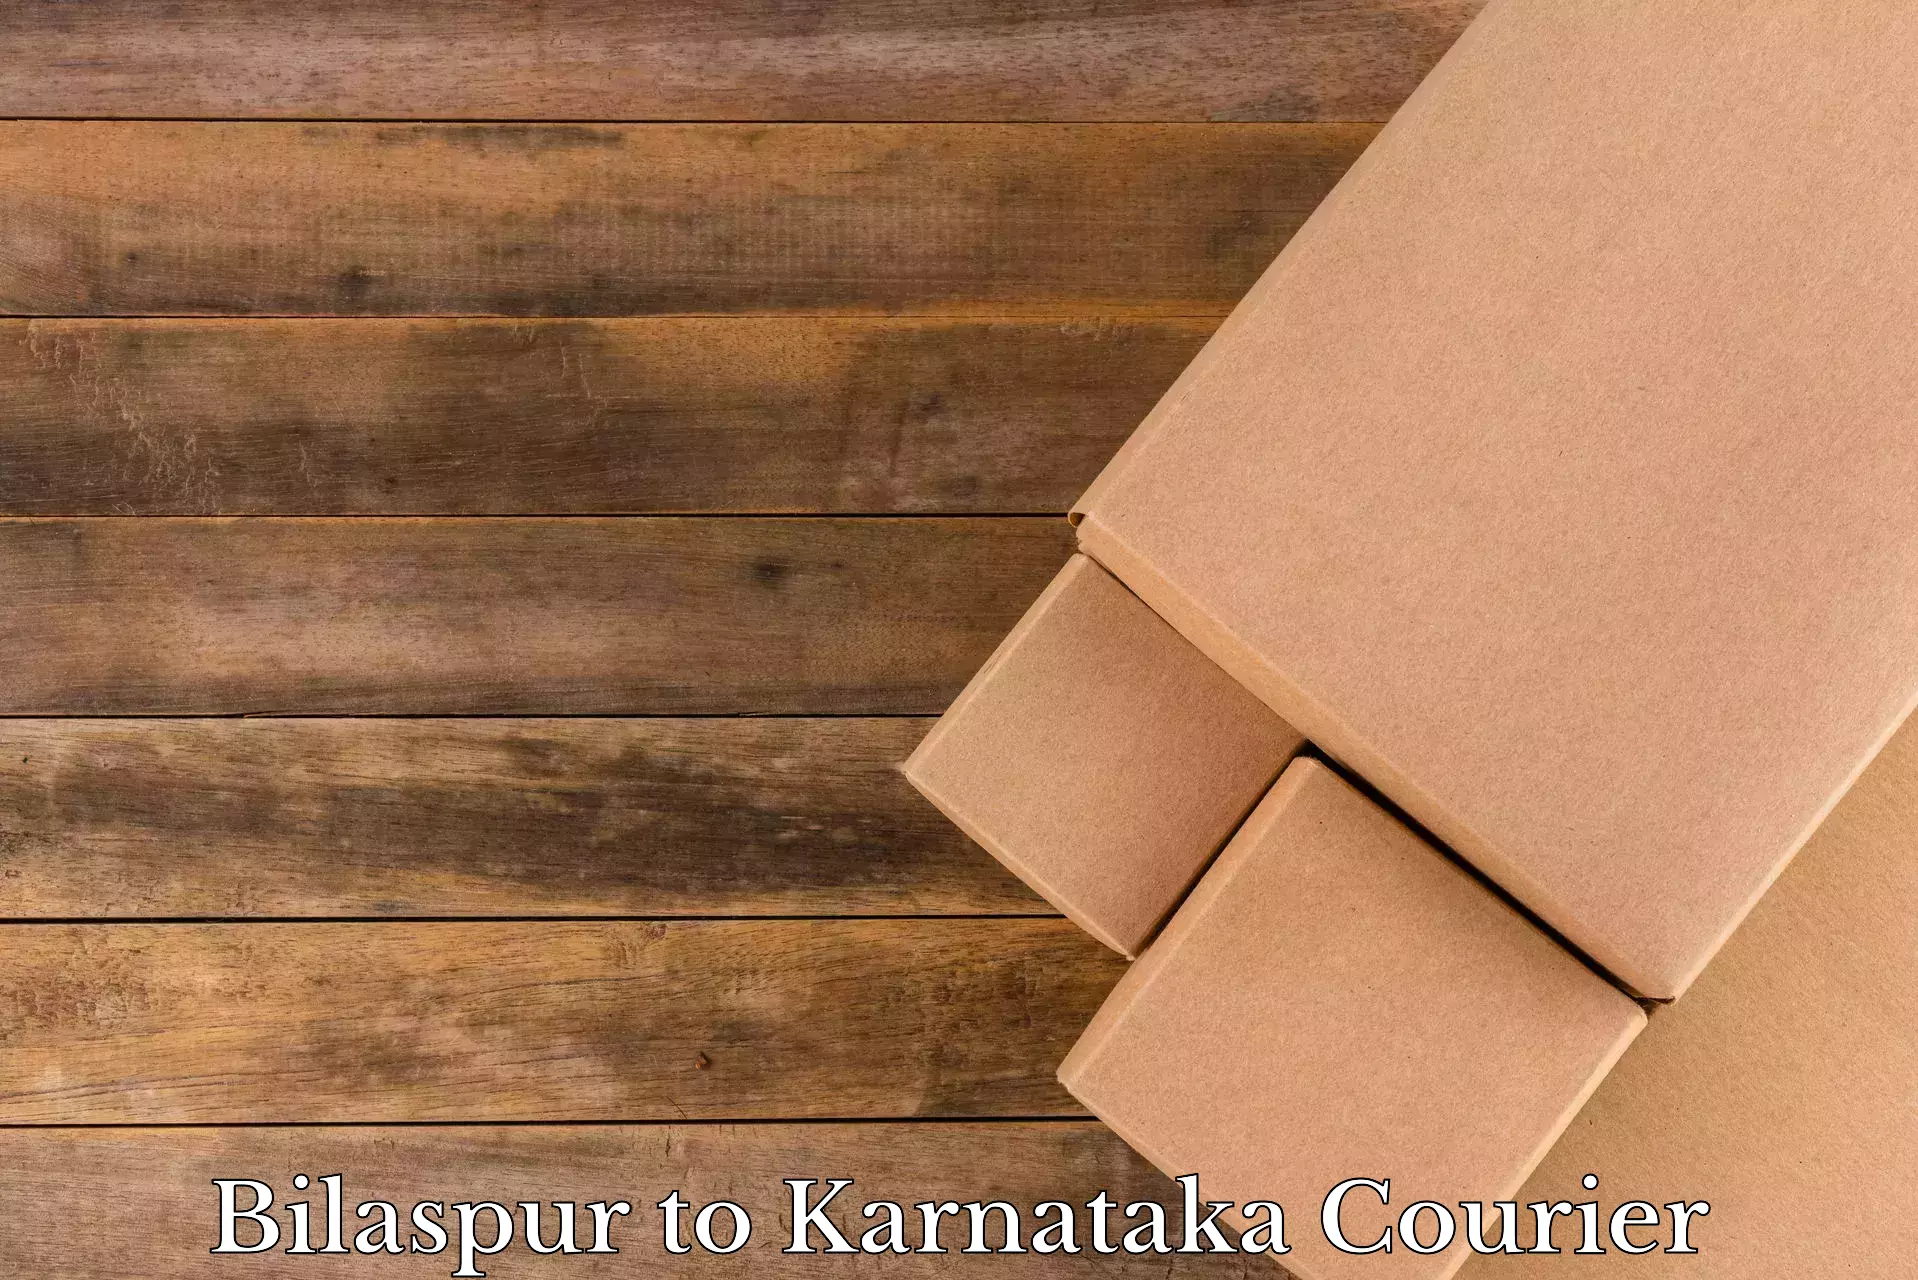 Efficient relocation services Bilaspur to Karnataka